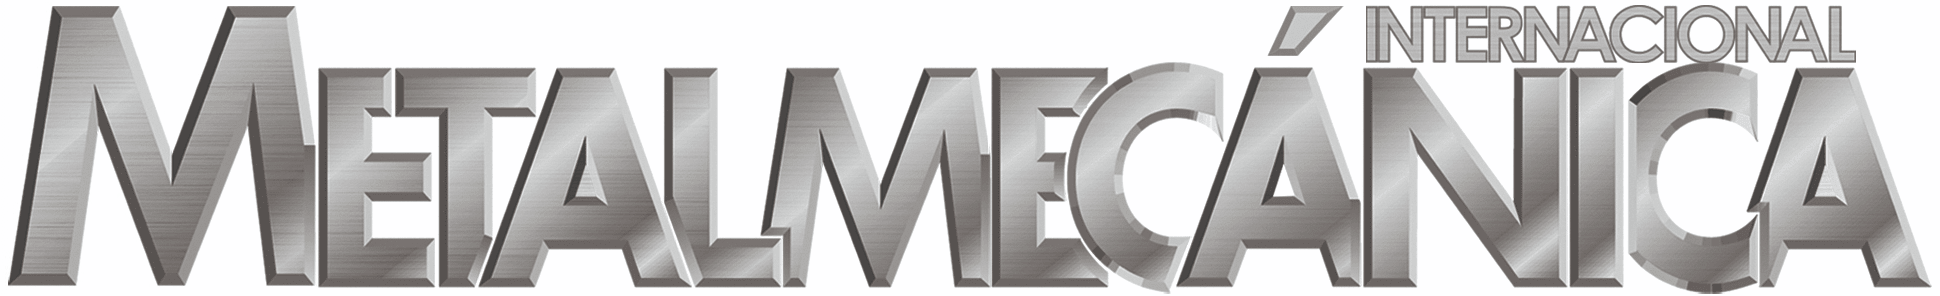 The logo of Metalmecánica